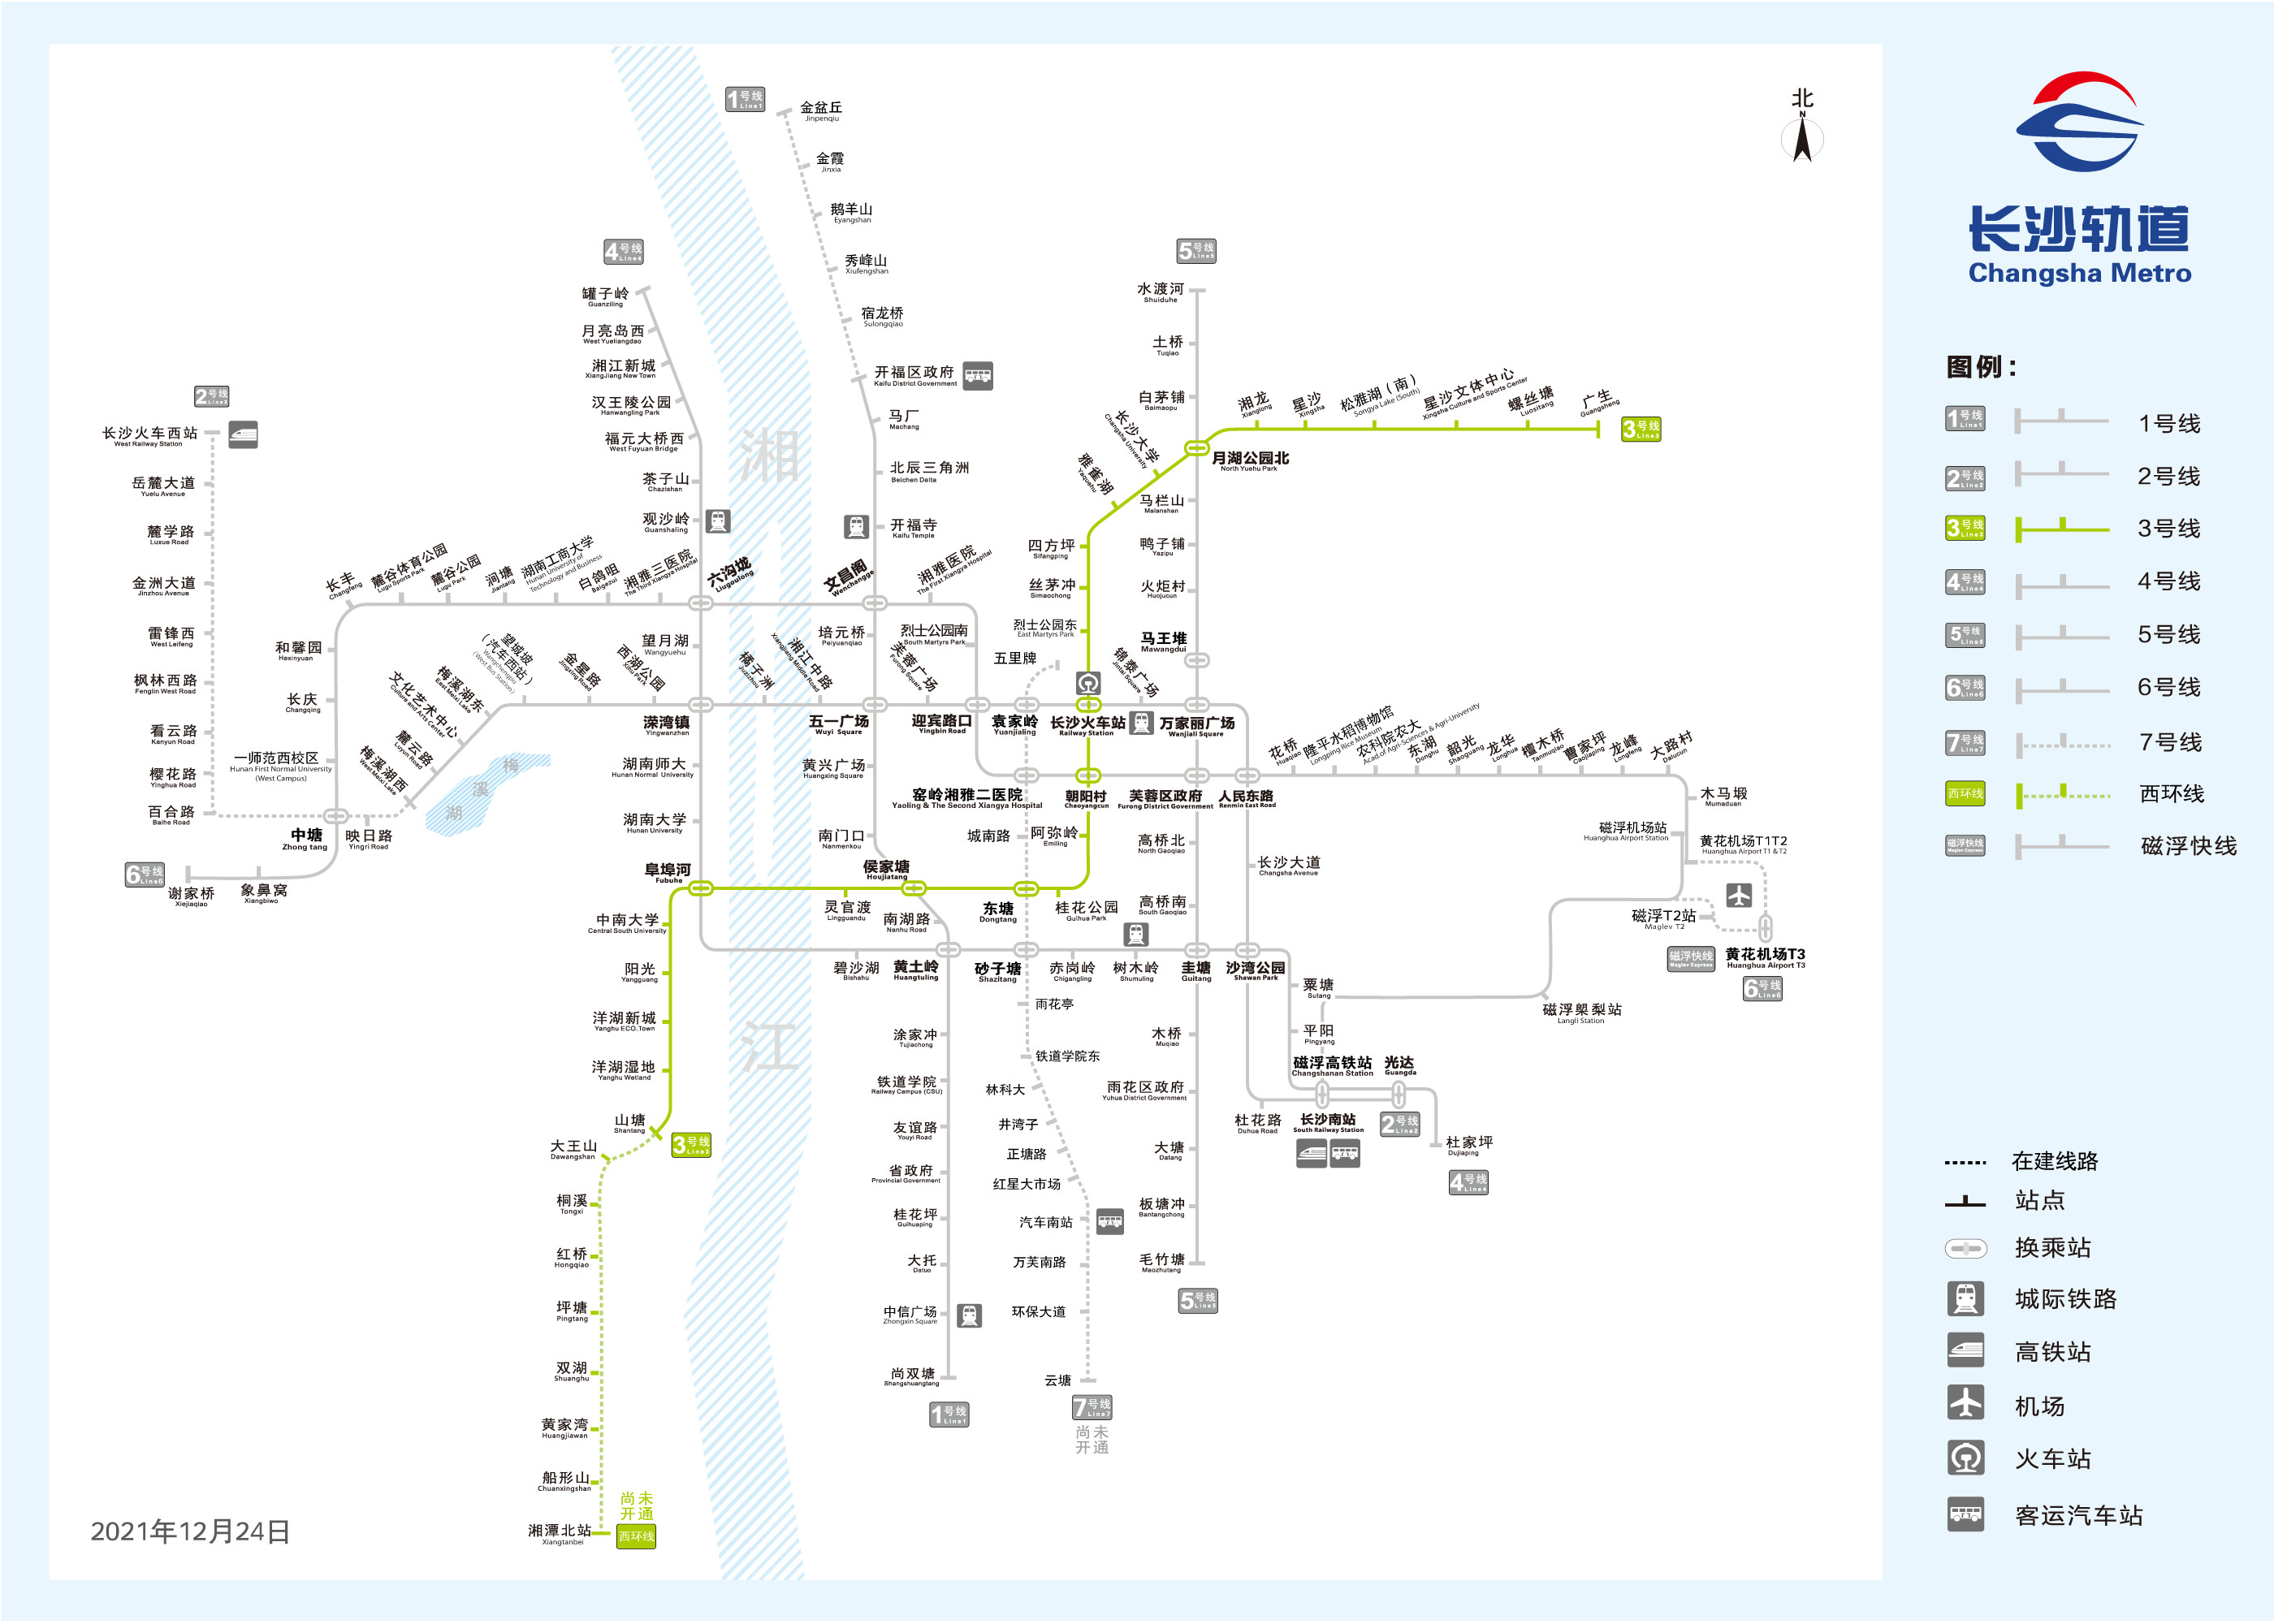 长株潭城际轨道交通西环线一期工程线路图。